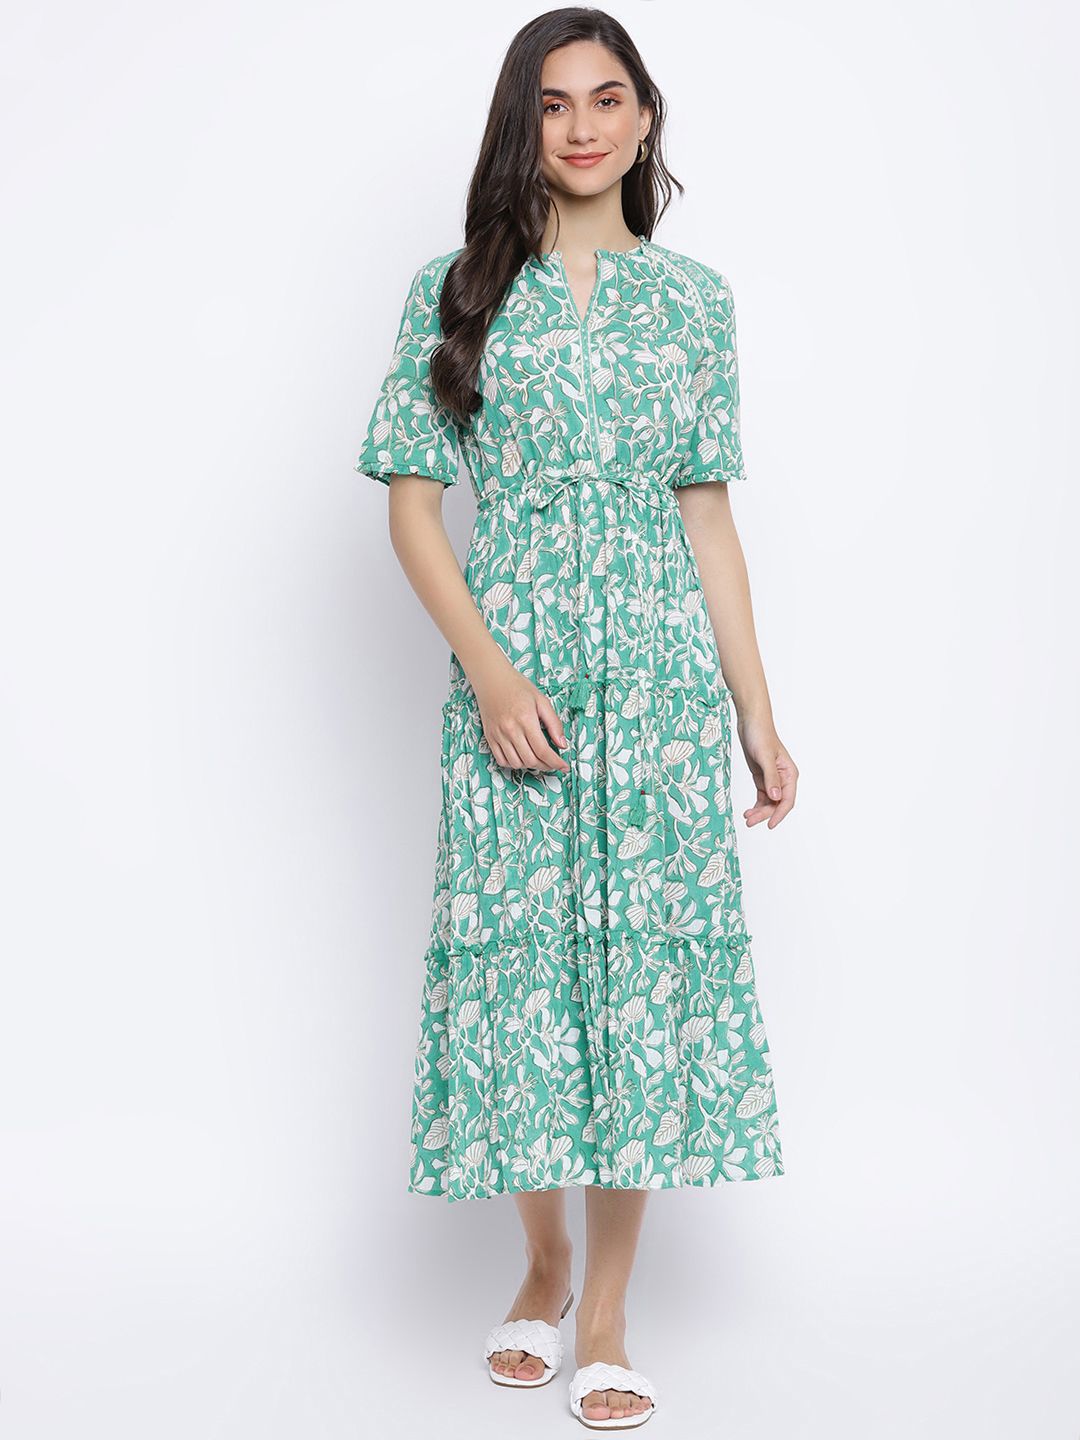 Fabindia Sea Green & Off White Floral Print A-Line Midi Cotton Dress Price in India